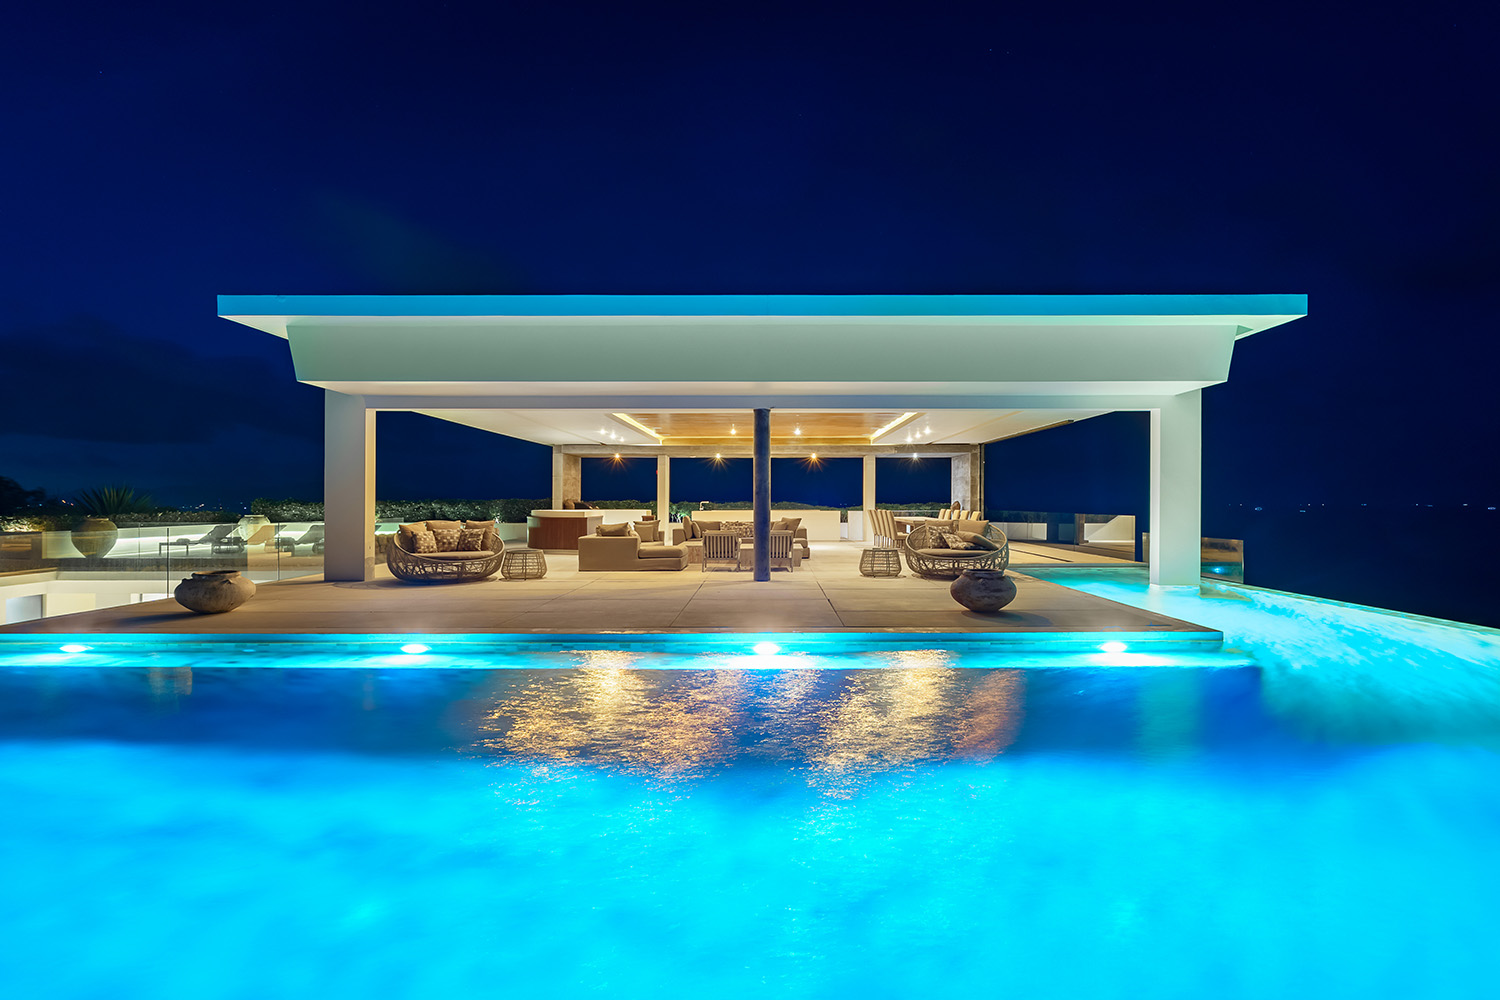 The Finest 5 Bedroom Seaview Pool Villa in Samujana for sale: The Finest 5 Bedroom Seaview Pool Villa in Samujana for sale